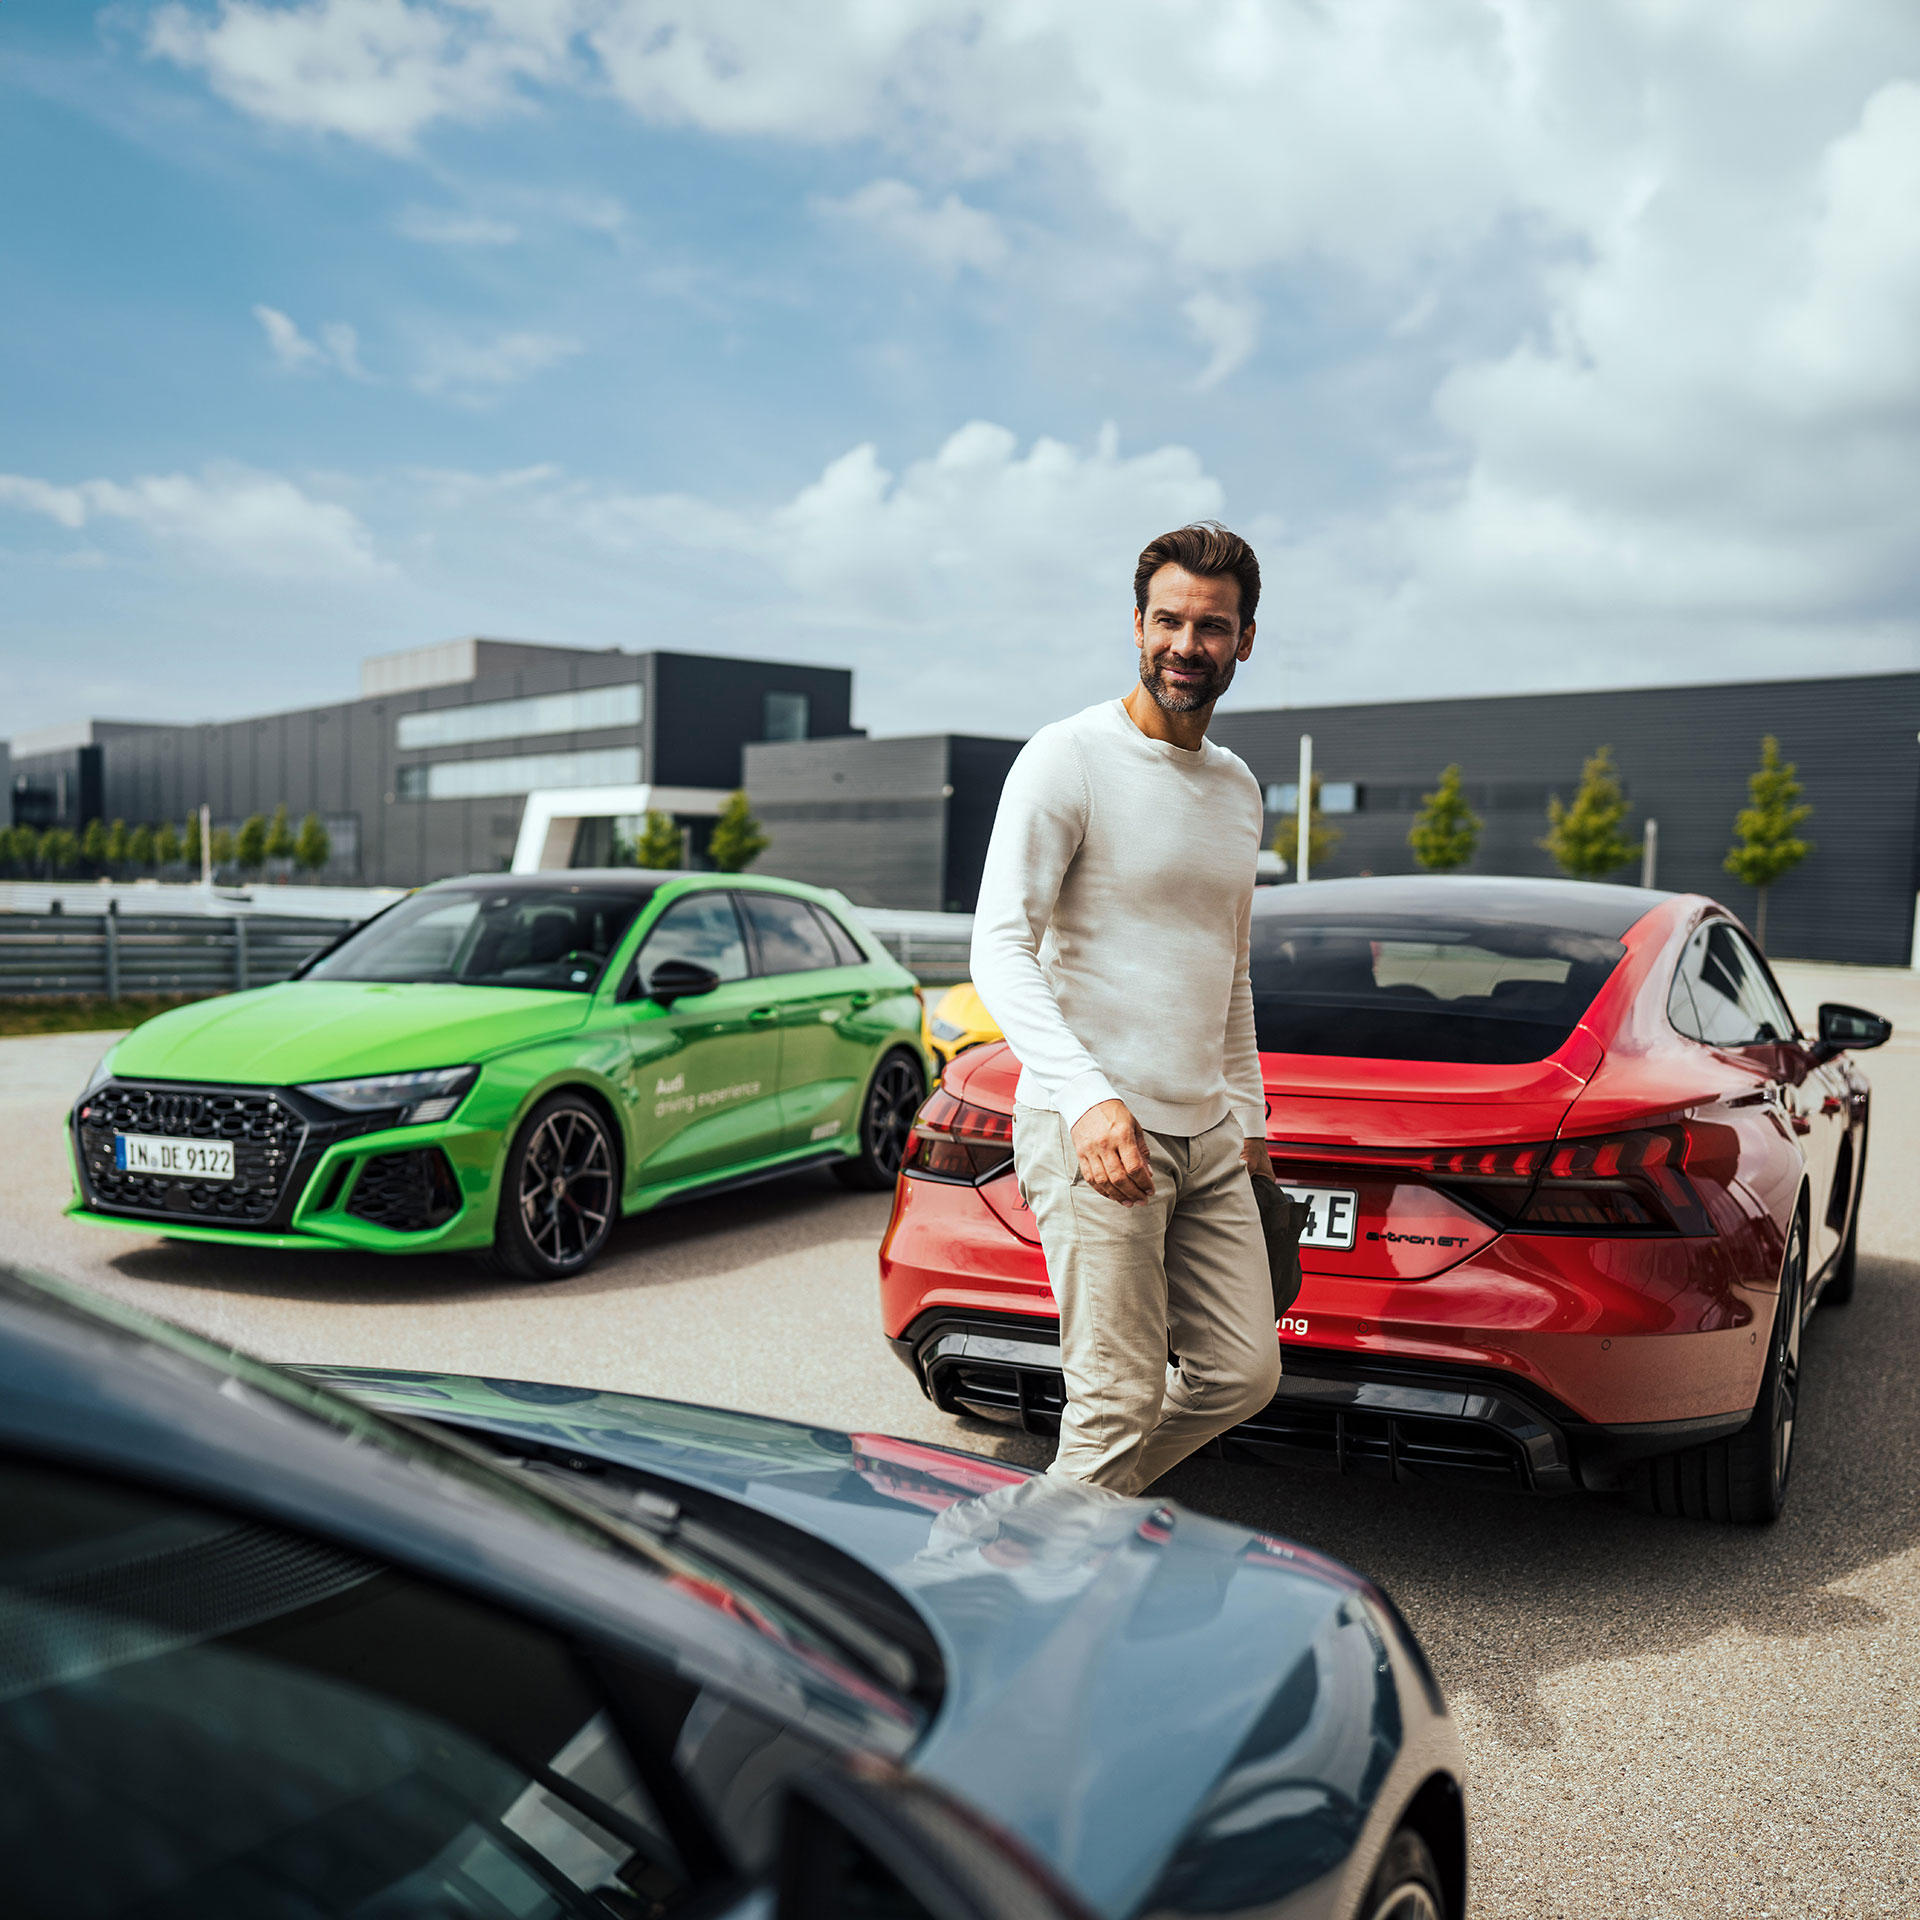 Ein Mann läuft zwischen drei Autos entlang, links steht ein hellgrünes Audi Modell, recht daneben befindet sich ein roter Audi RS e-tron GT und vorne vor befindet sich noch ein weiteres dunkelgraues Audi Modell